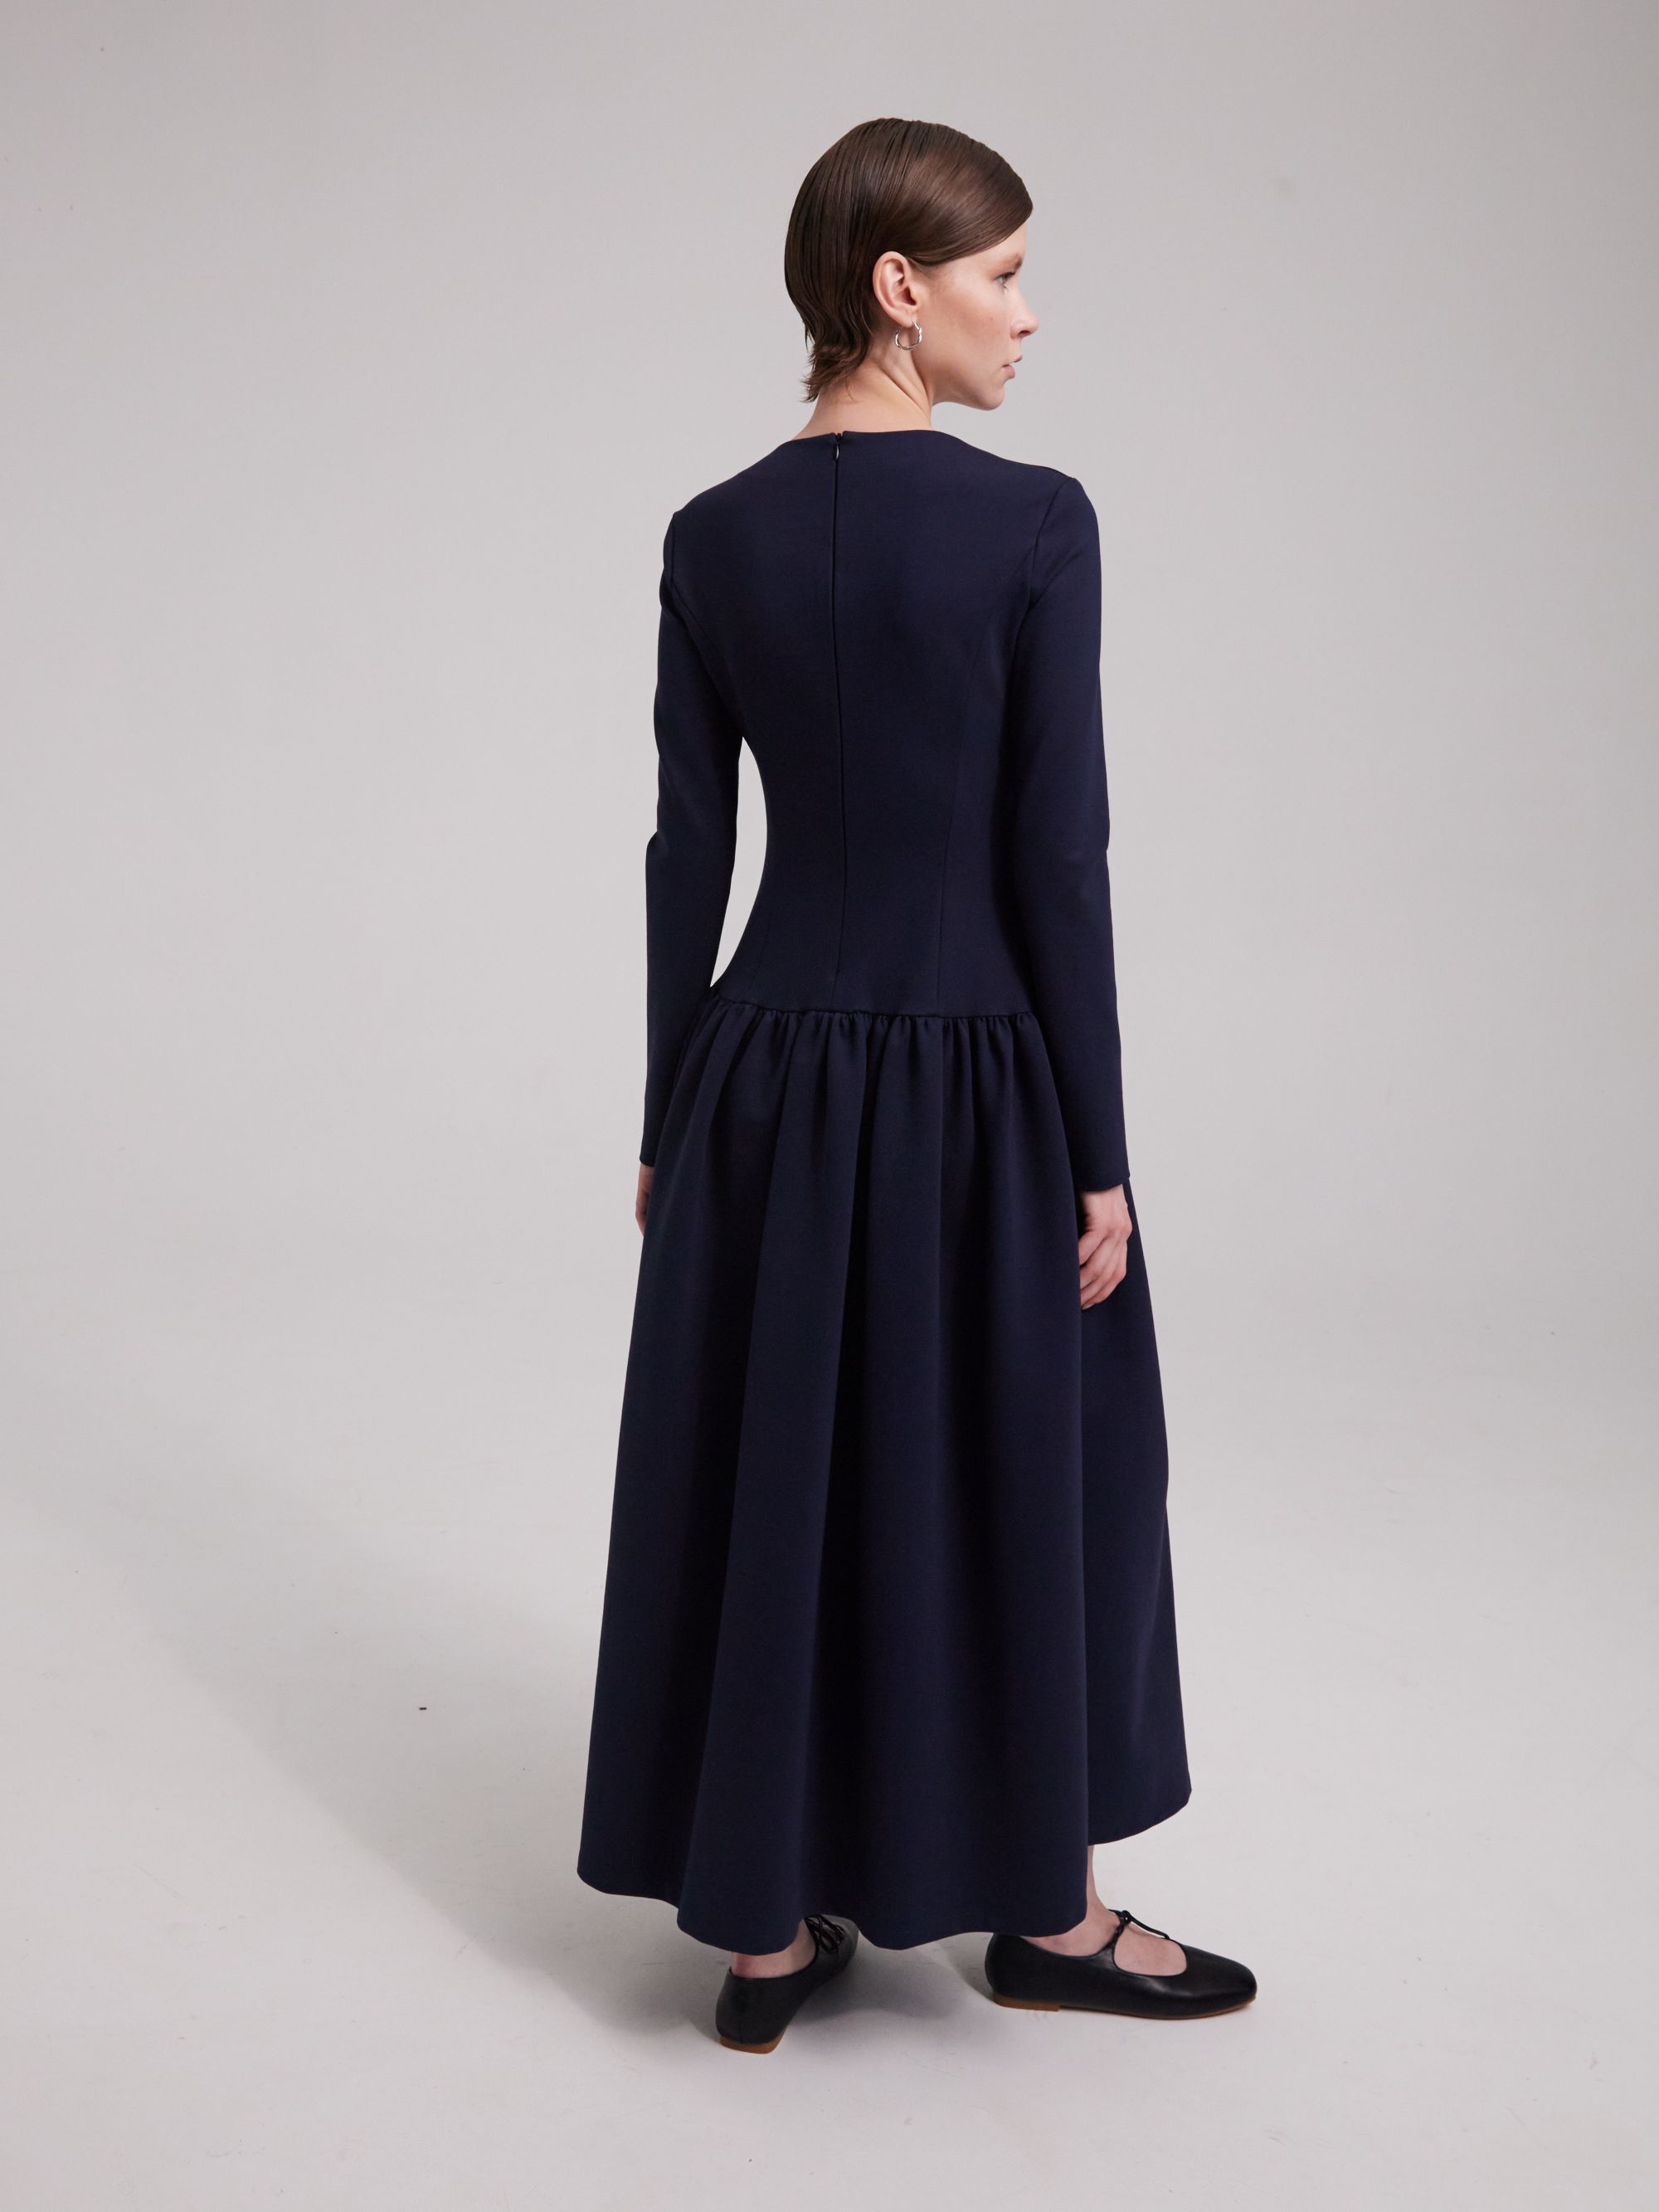 Dress, pattern №1050 buy online